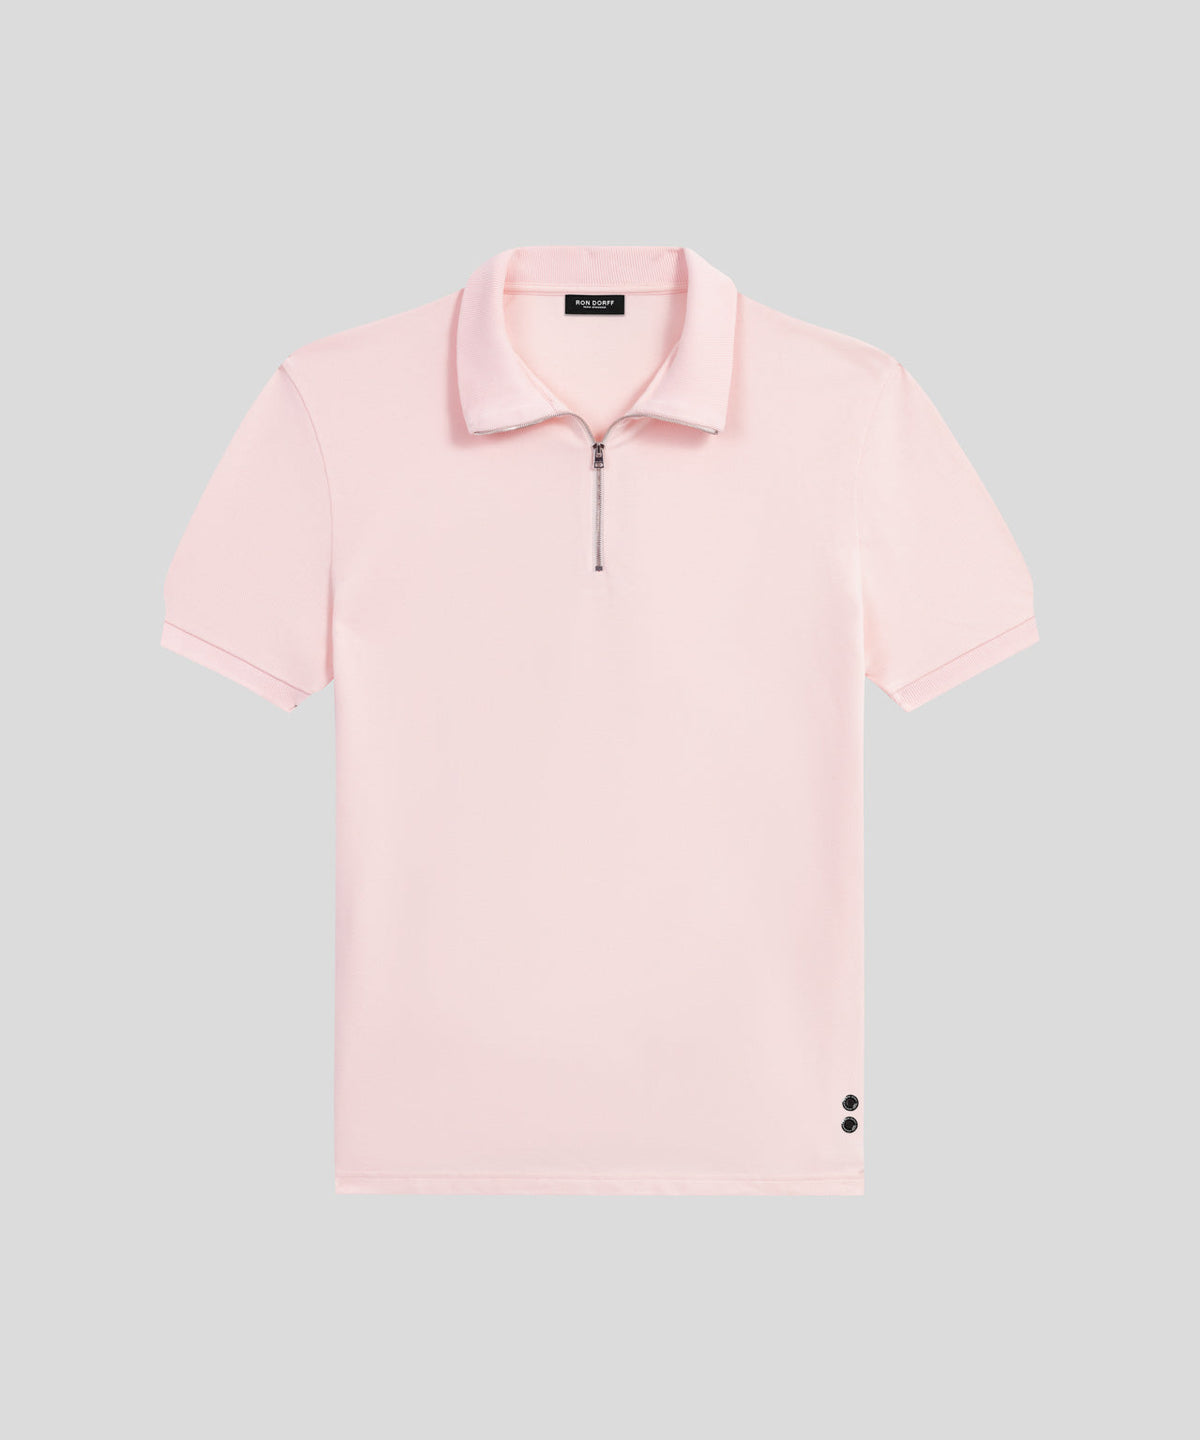 Cotton Piqué RD Polo: Pastel Pink